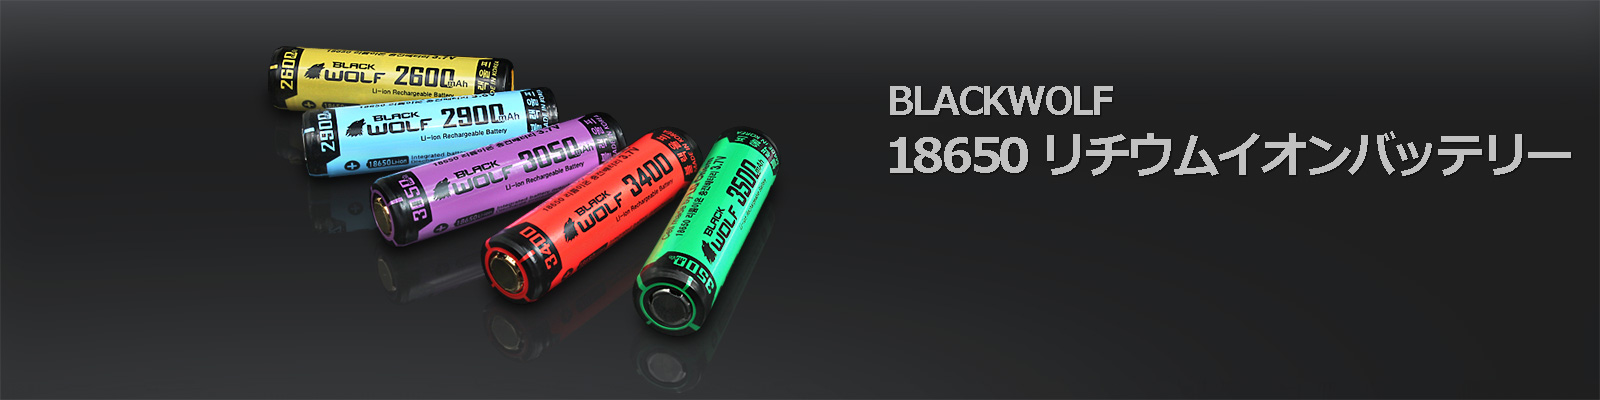 BLACKWOLF 18650リチウムイオンバッテリー